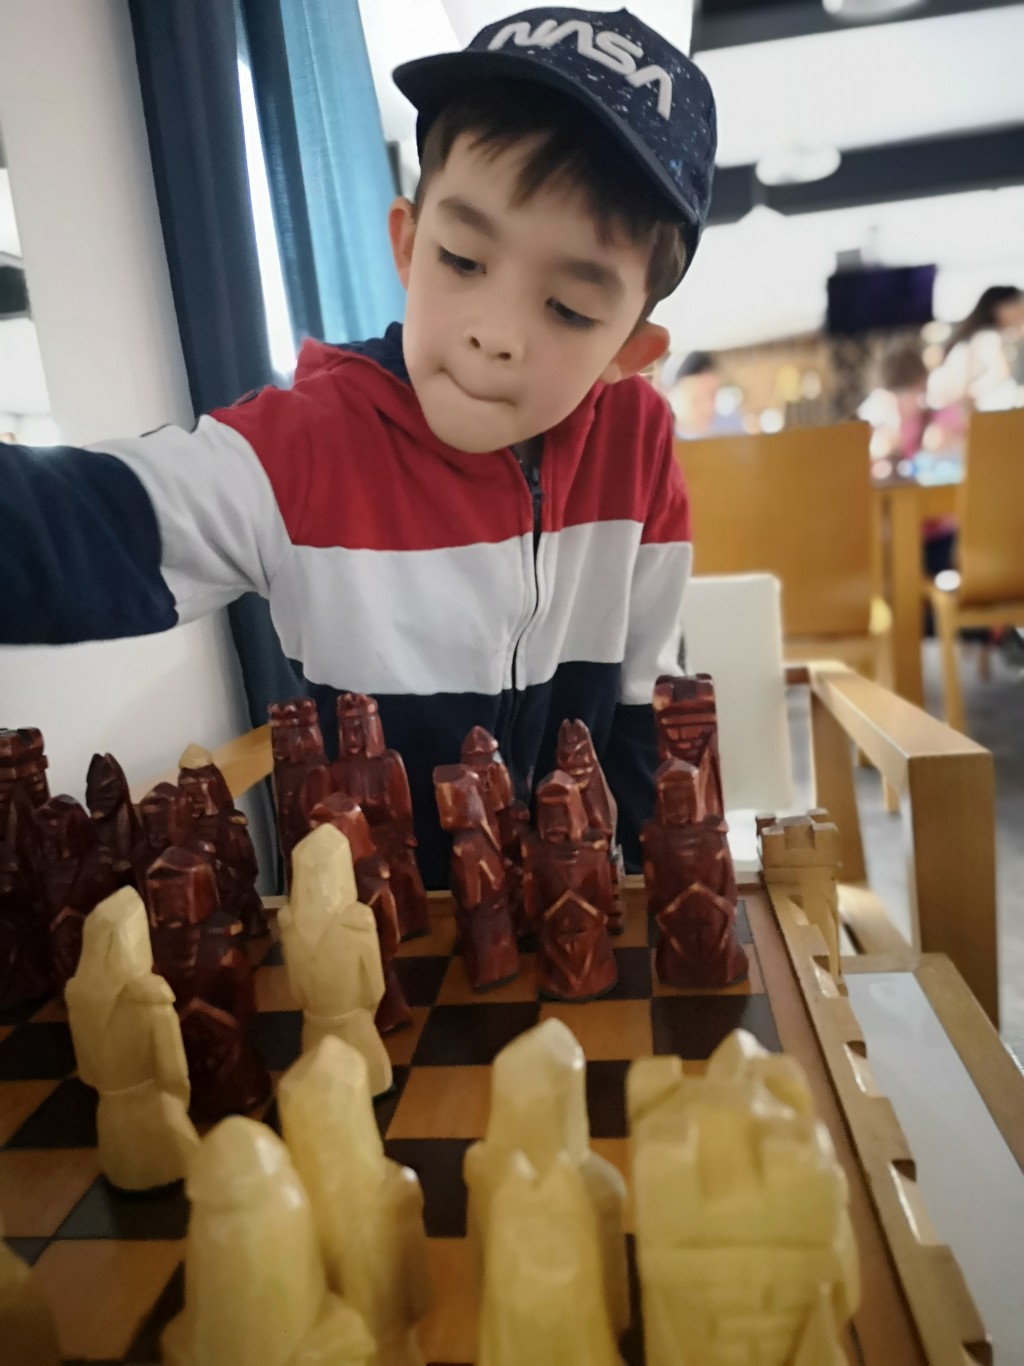 Krystian熱愛國際象棋，多次參加比賽，更是省冠軍。嘉瑩認為波蘭着重啟發小朋友興趣，不會盲目催谷他們讀書。